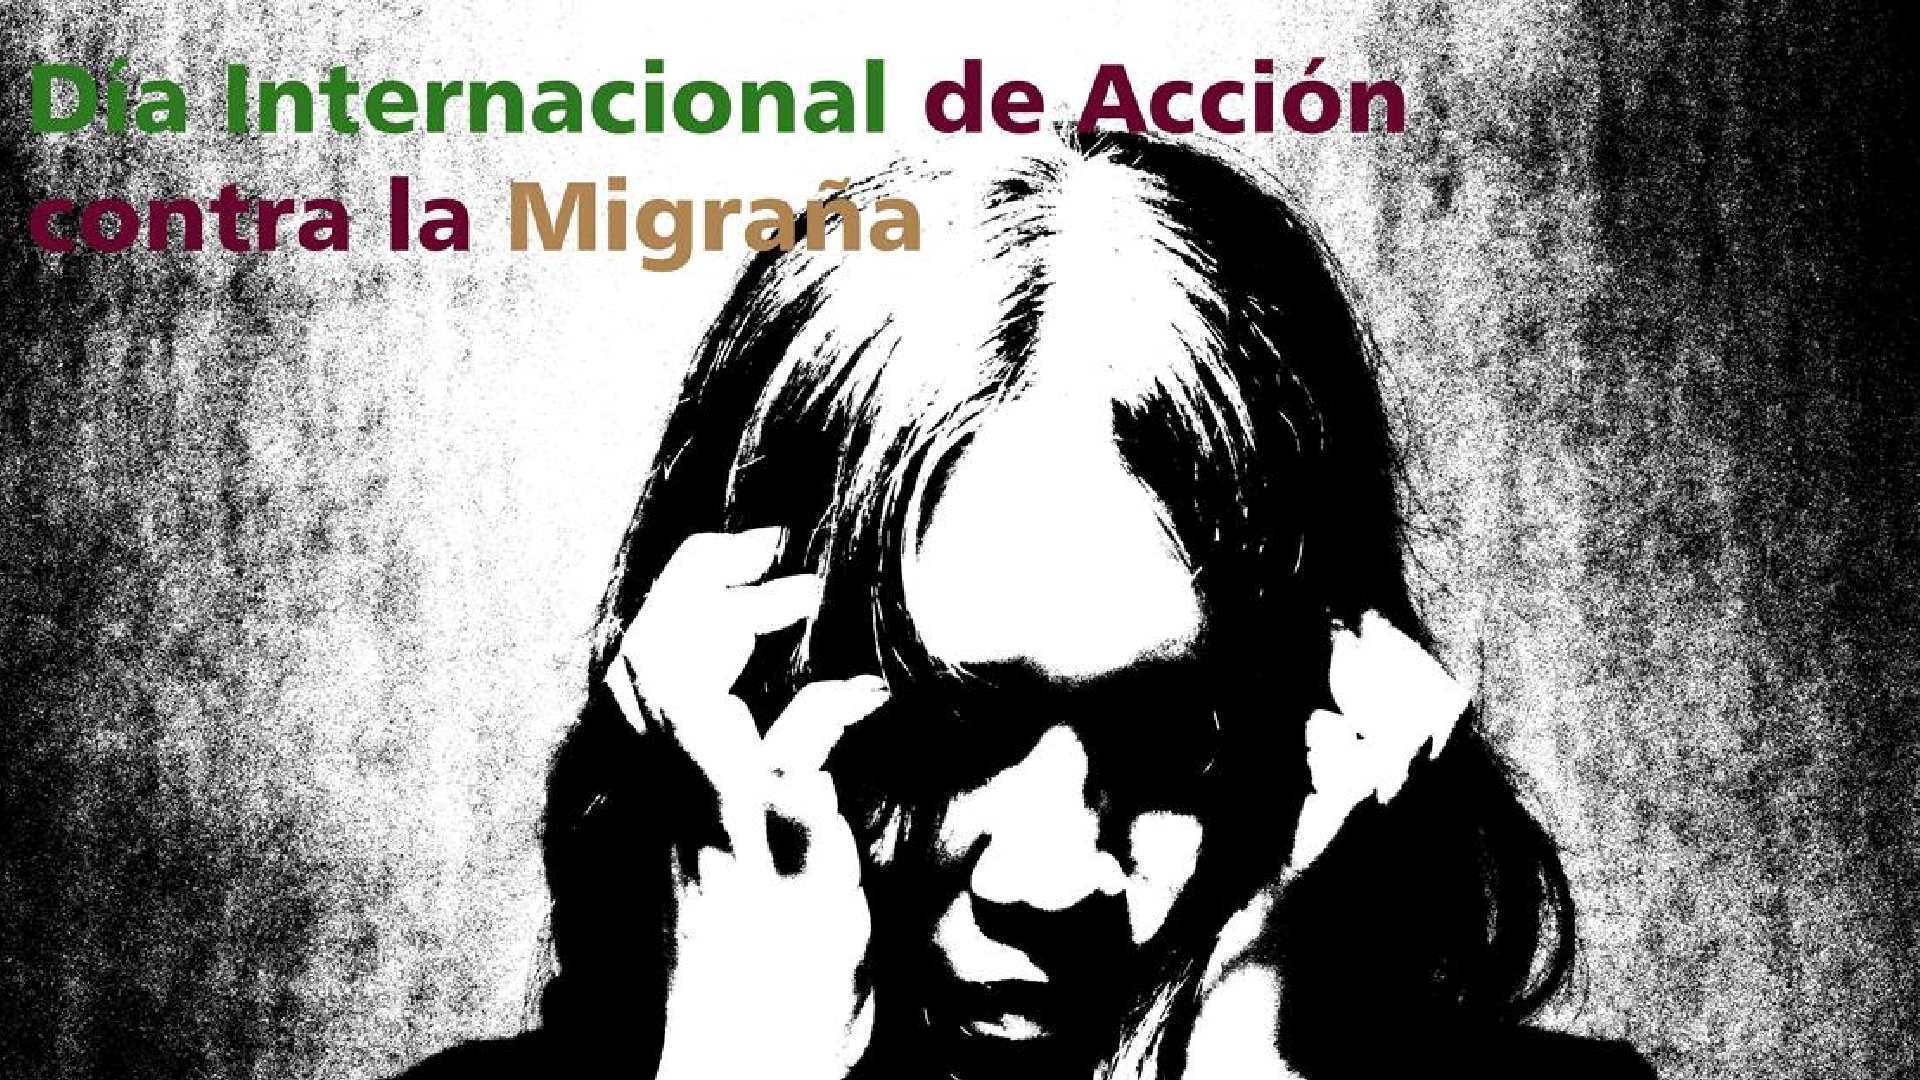 Presentan recomendaciones para el tratamiento de la migraña en el Día Internacional de Acción Contra este padecimiento.